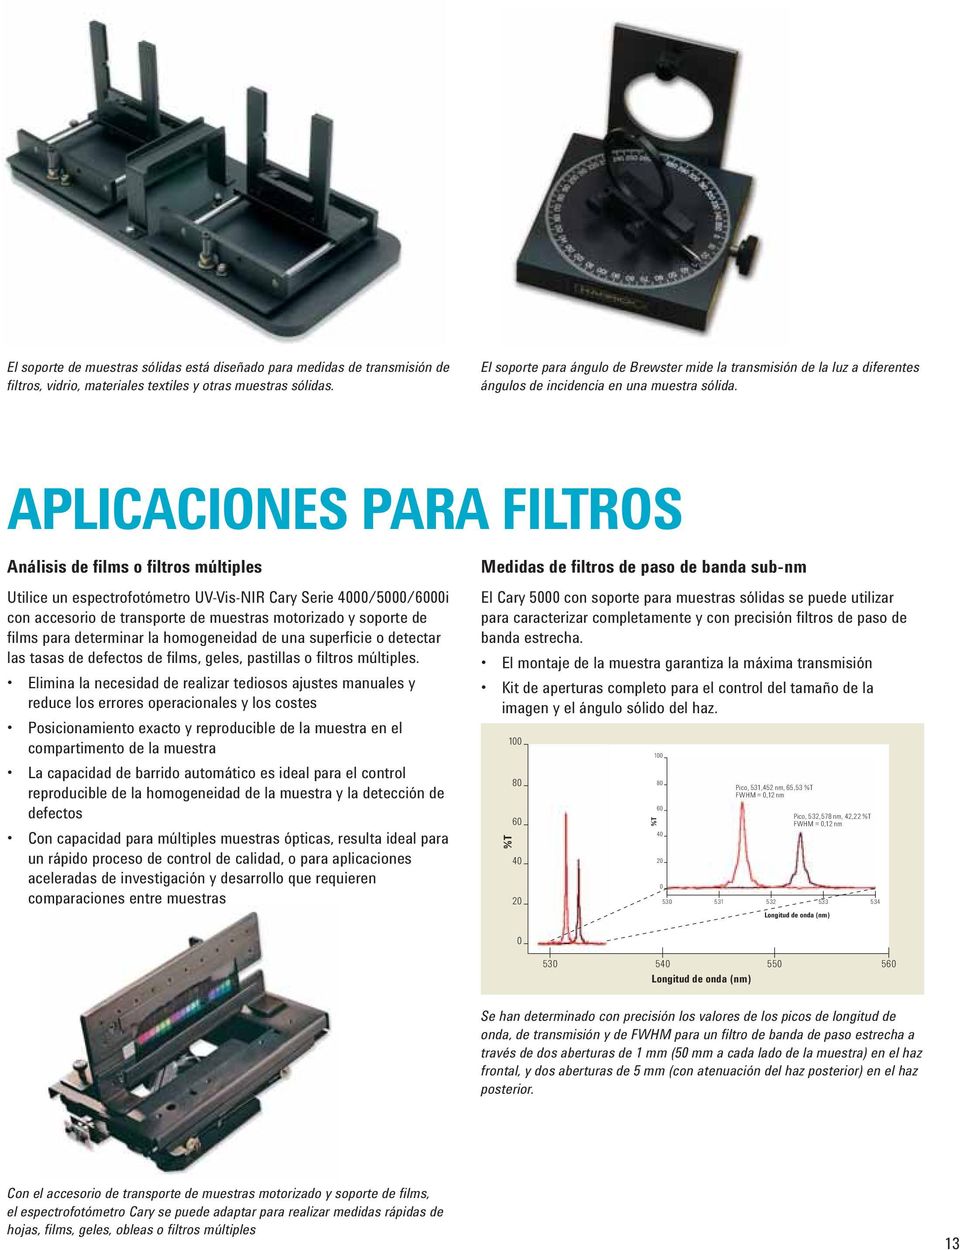 APLICACIONES PARA FILTROS Análisis de films o filtros múltiples Utilice un espectrofotómetro UV-Vis-NIR Cary Serie 4000/5000/6000i con accesorio de transporte de muestras motorizado y soporte de